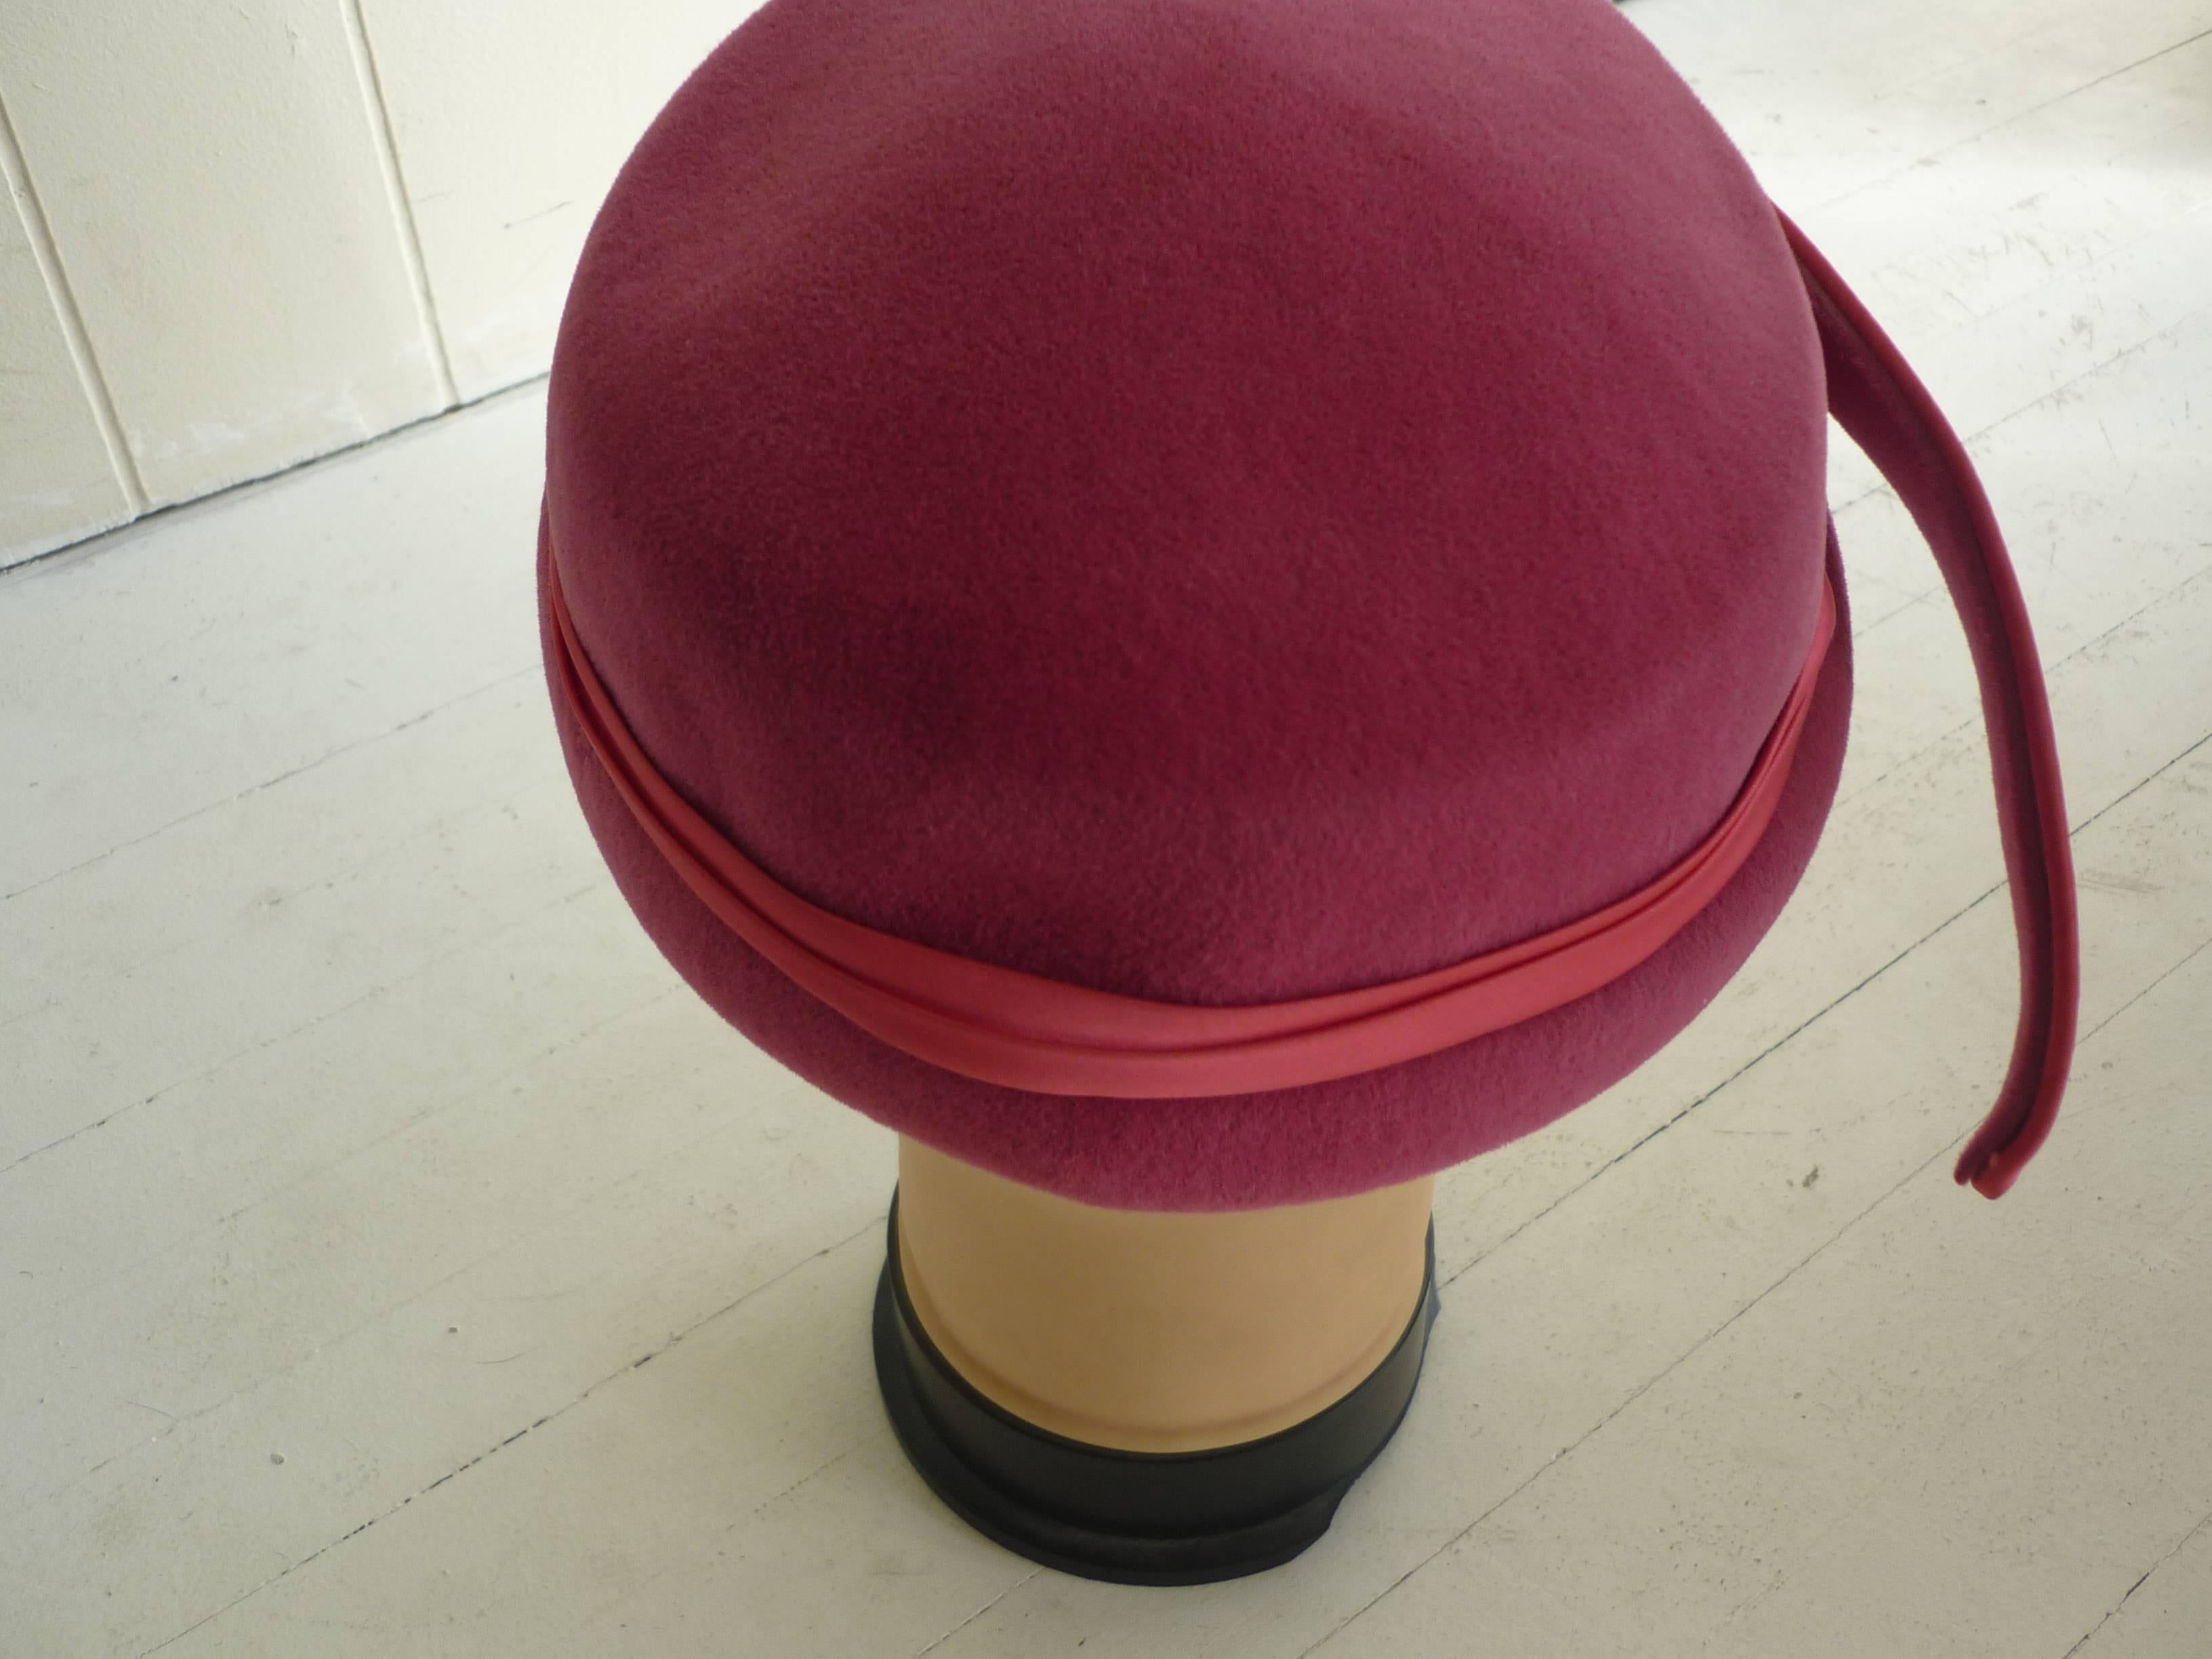 Dieser Hut aus Filz mit Satinbesatz und federartiger Verzierung passt sich gut an Ihren Kopf an.

Die Unterseite des Hutes ist mit einer silbernen und grobkörnigen Zierleiste verziert.

Der Hut wurde in Italien hergestellt.